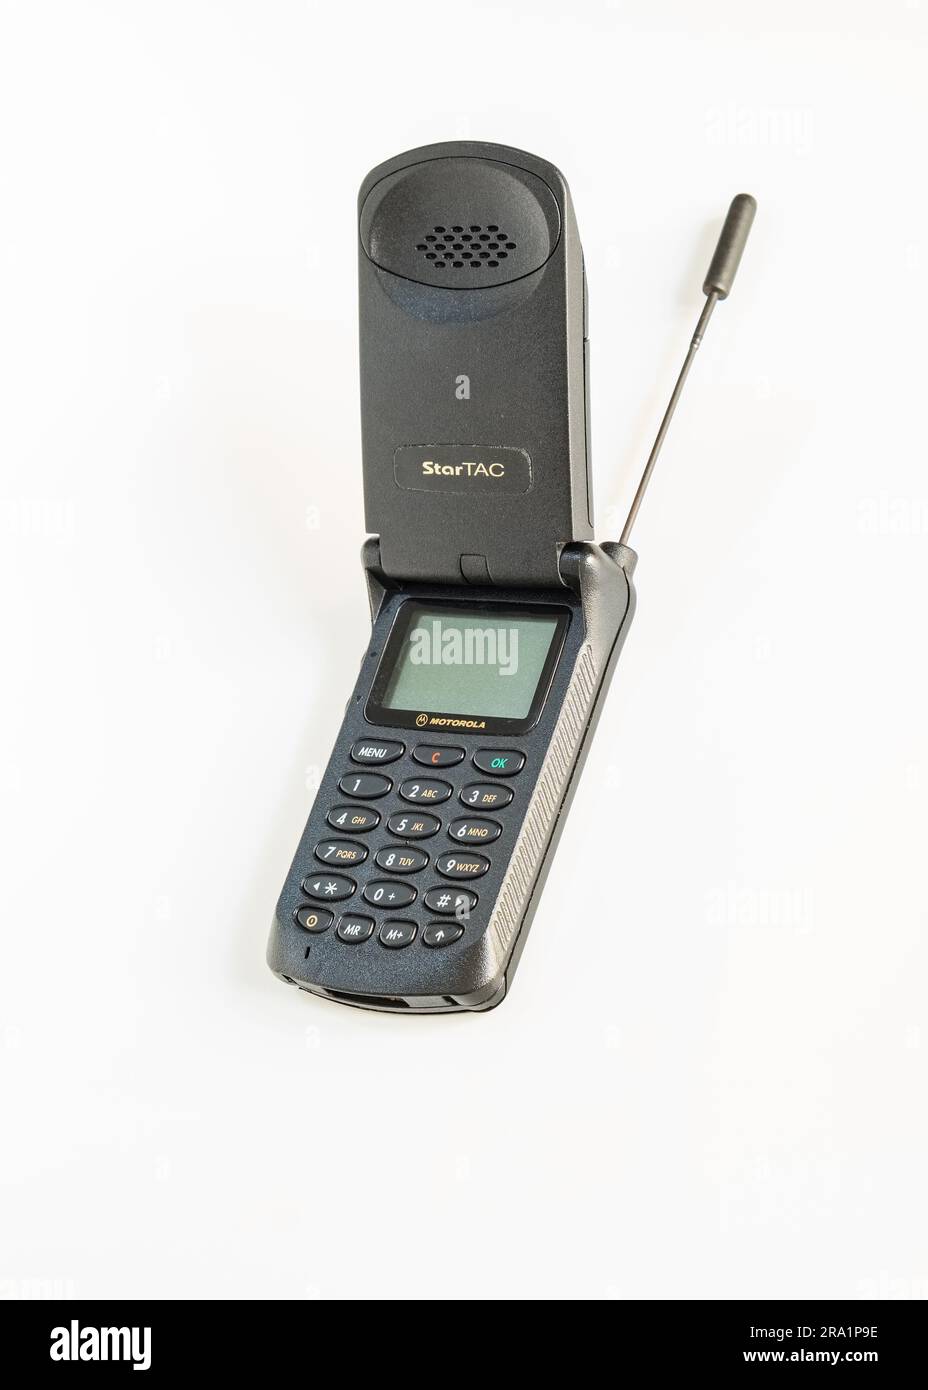 Motorola StarTAC, offenes Mobiltelefon aus dem 90s mit entfernter Antenne, ein technologisches Symbol, das die Geschichte der Mobiltelefonie geschrieben hat. Stockfoto